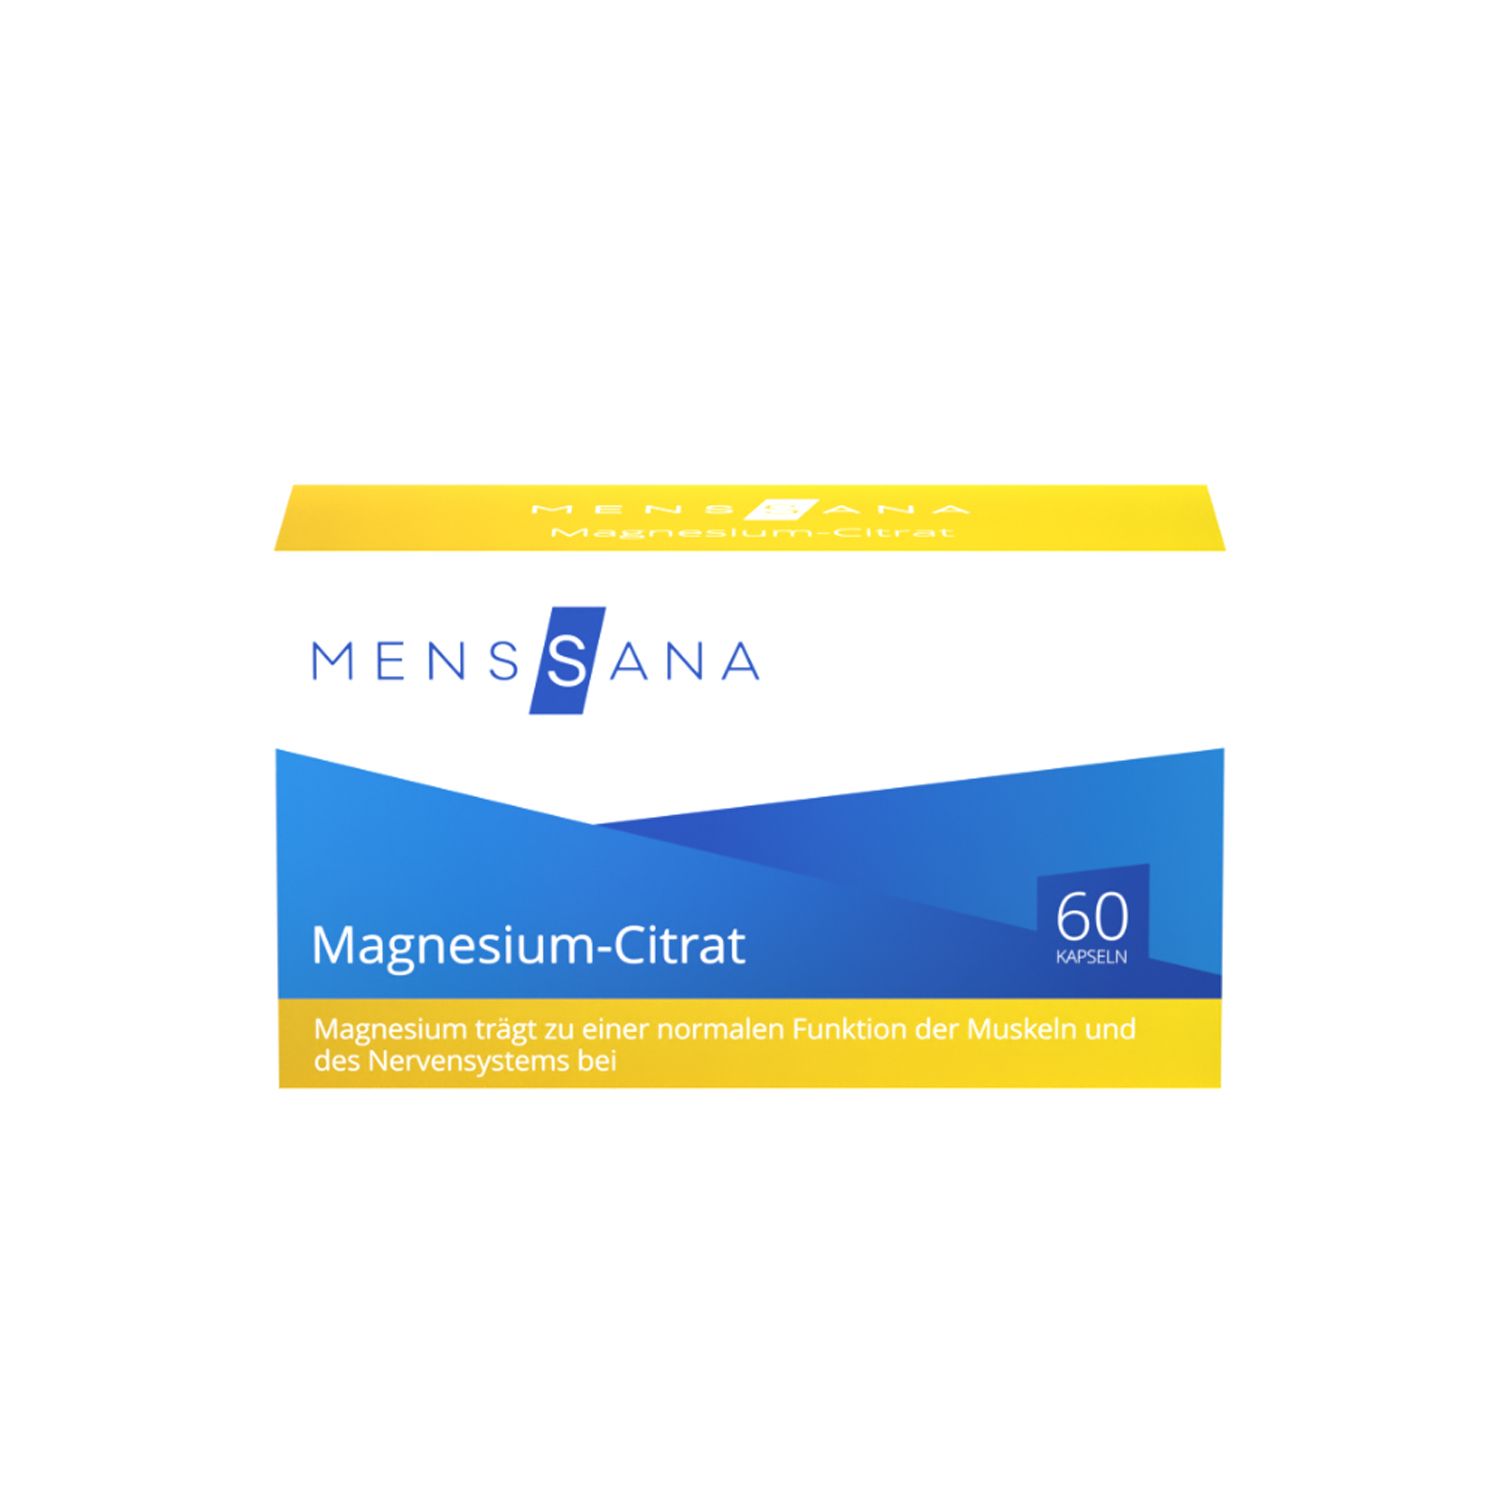 Menssana Magnesium-Citrat